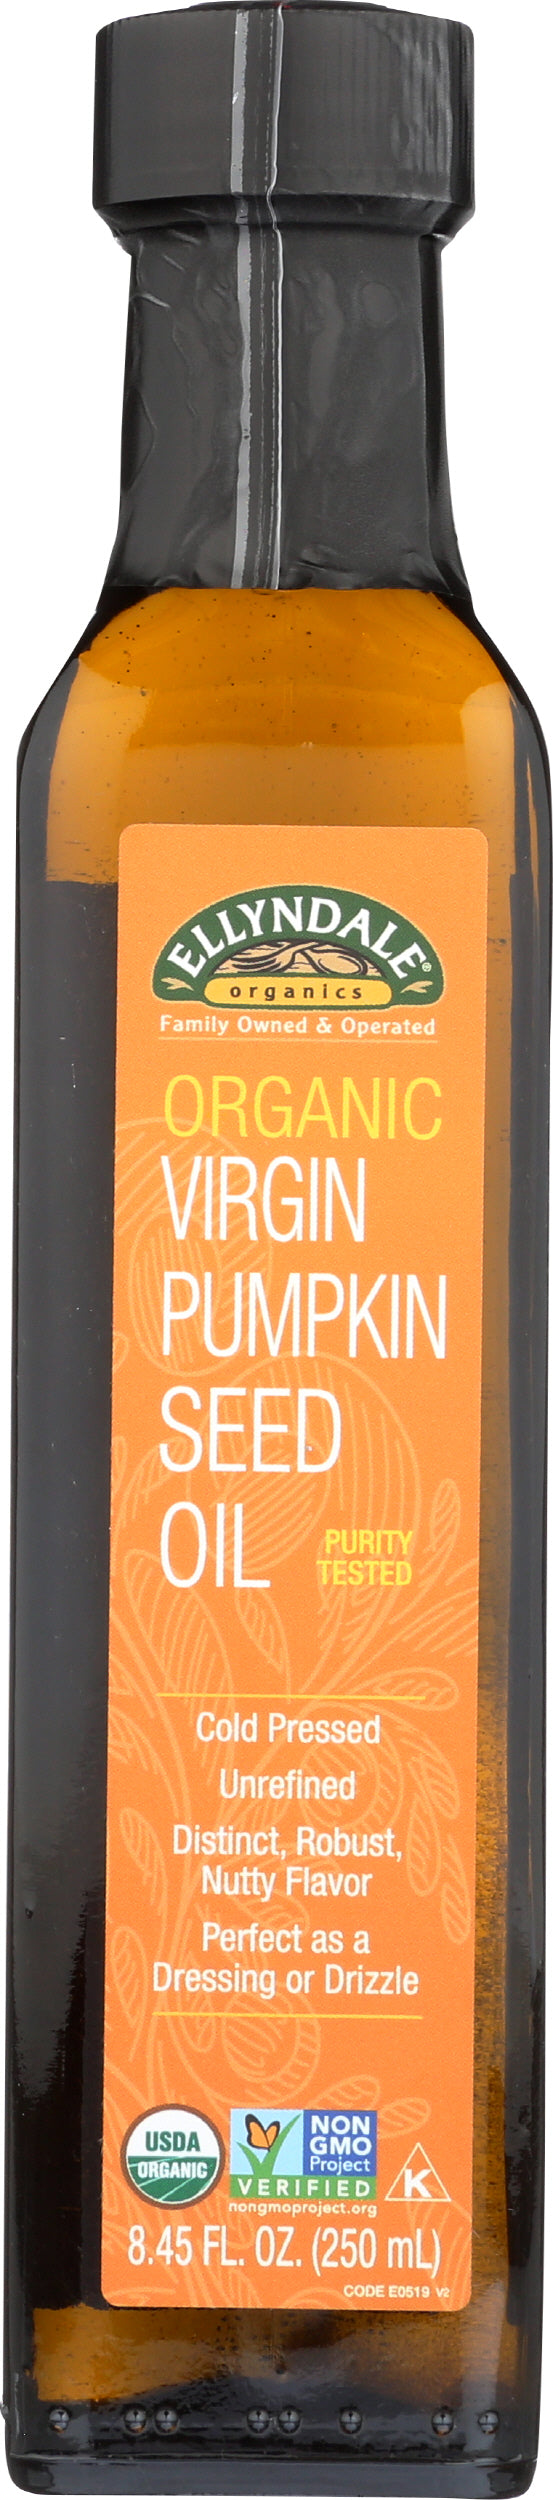 Ellyndale Organic Virgin Pumpkin Seed Oil 8.45 Fl. Oz. Front of Bottle